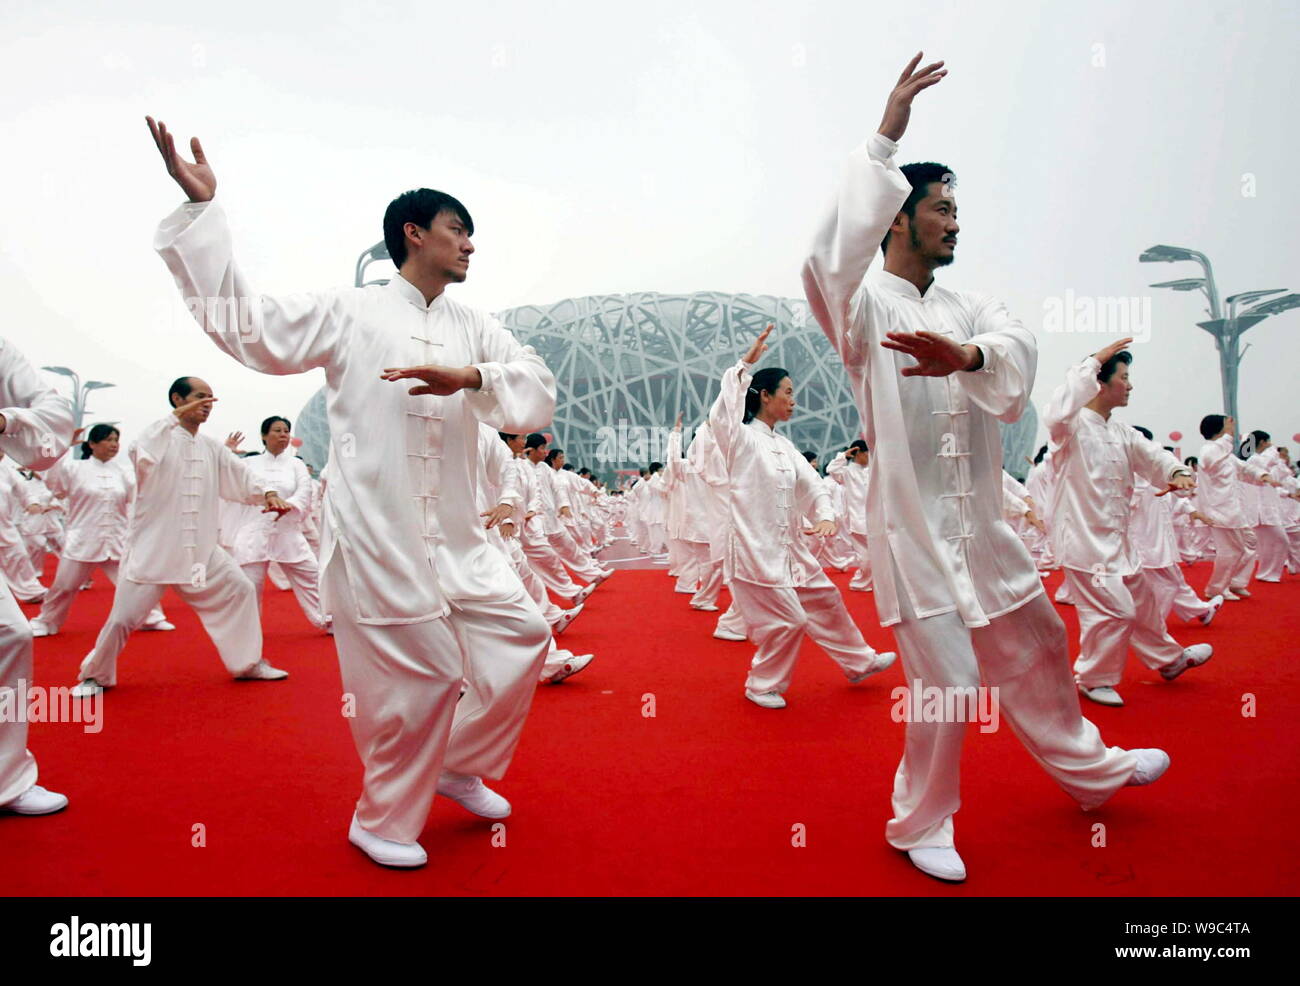 Über 34.000 Chinesen durchführen Schattenboxen vor der National Stadium, wie die Vögel Nest genannt, während einer Veranstaltung Kennzeichnung der Nationalen Fitne Stockfoto